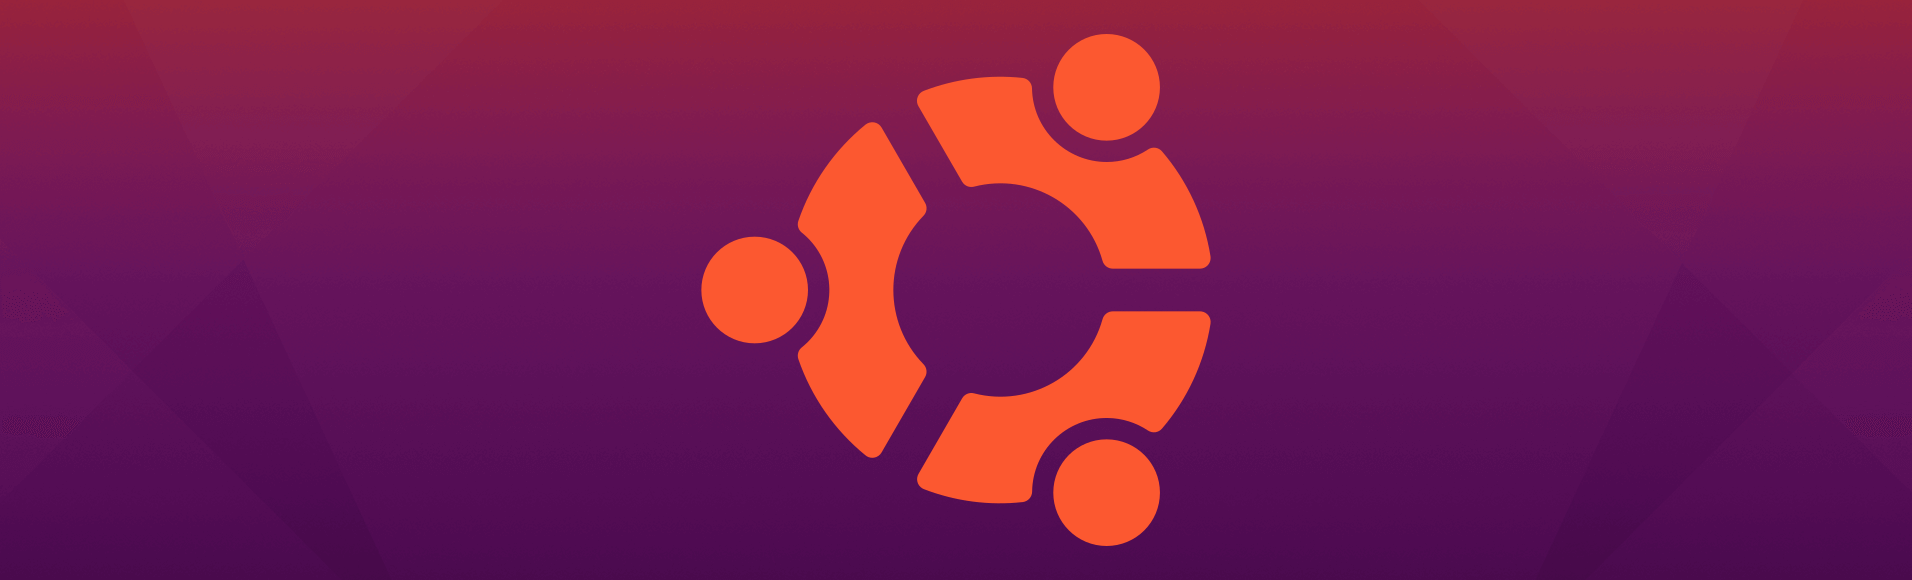 Sida loo rakibo vfxAlert Ubuntu